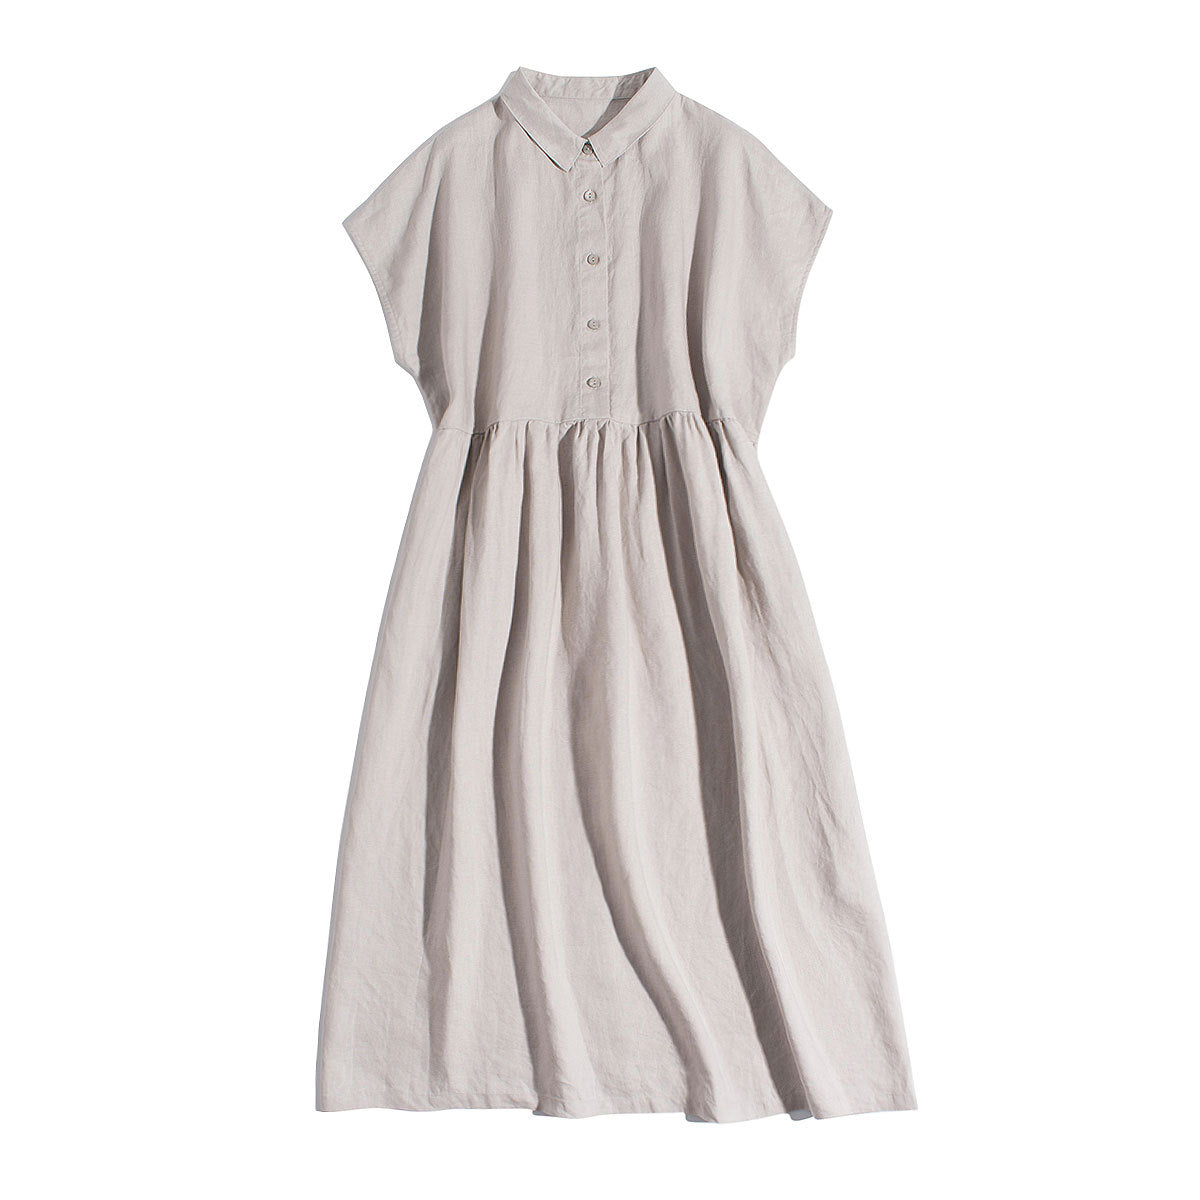 NTG Fad linen / M Cotton Linen Summer Casual Turn-Down Collar Button Up Shirt Dress